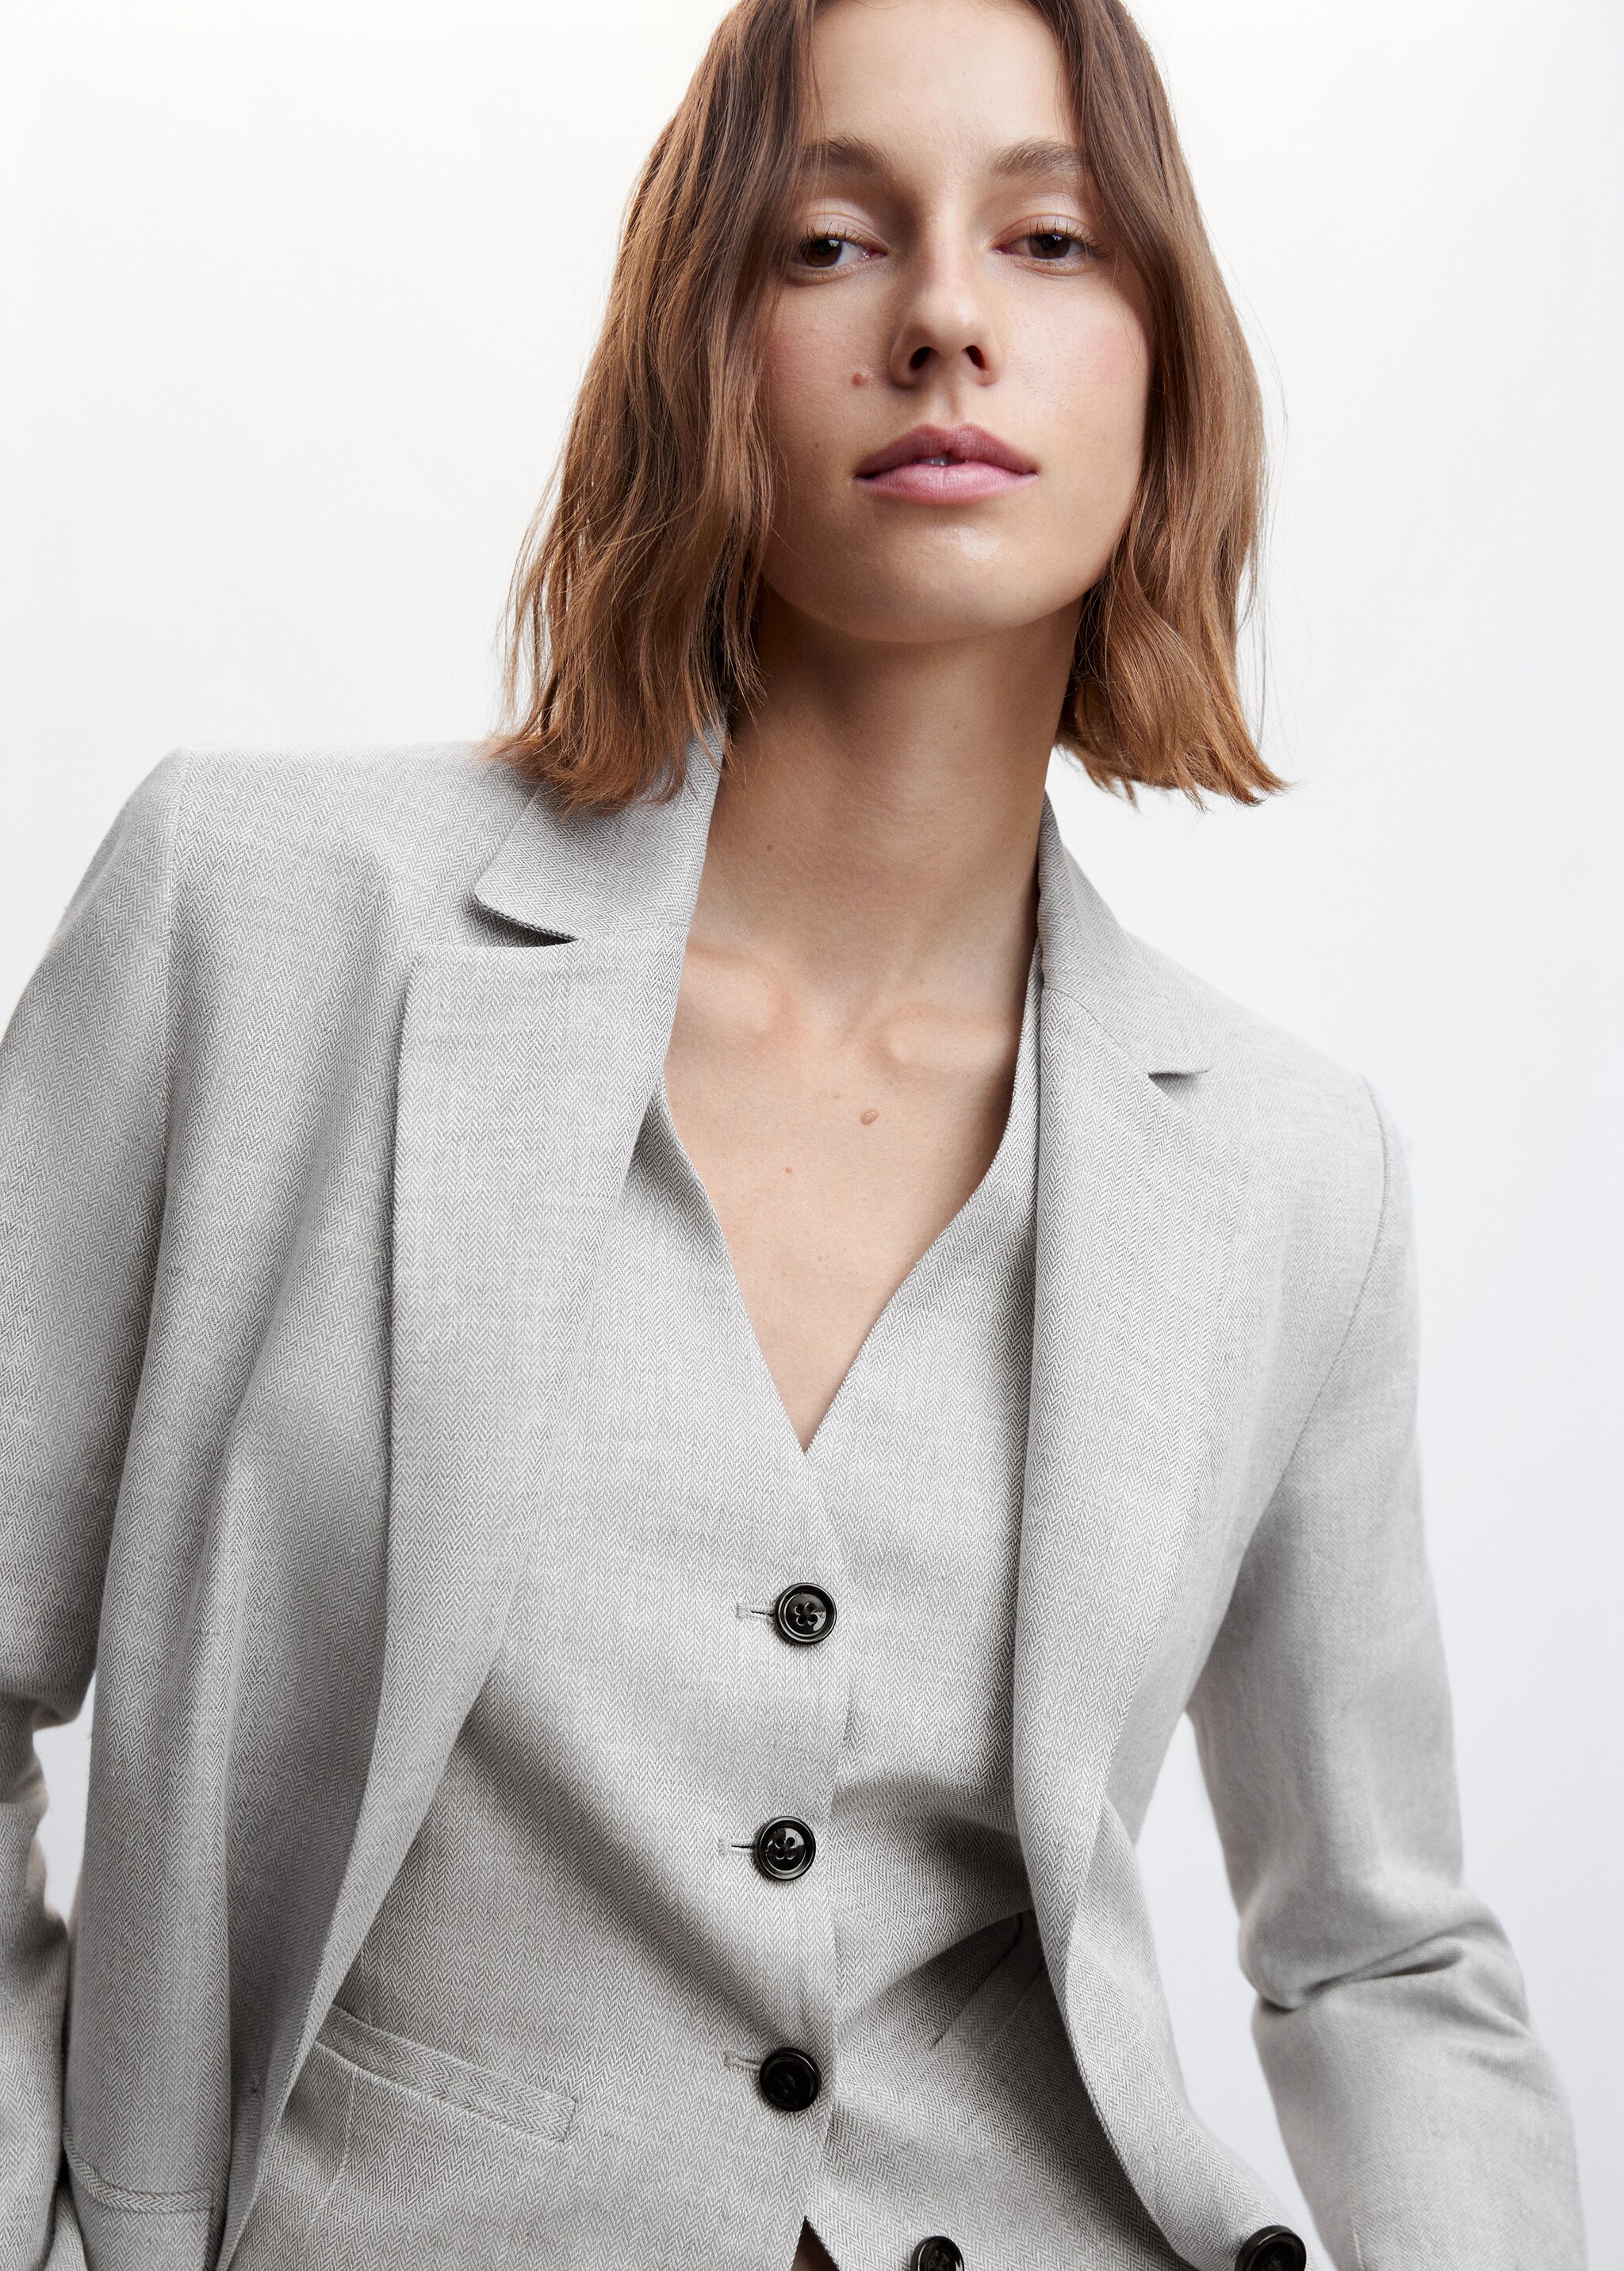 Herringbone linen suit waistcoat - Details of the article 1